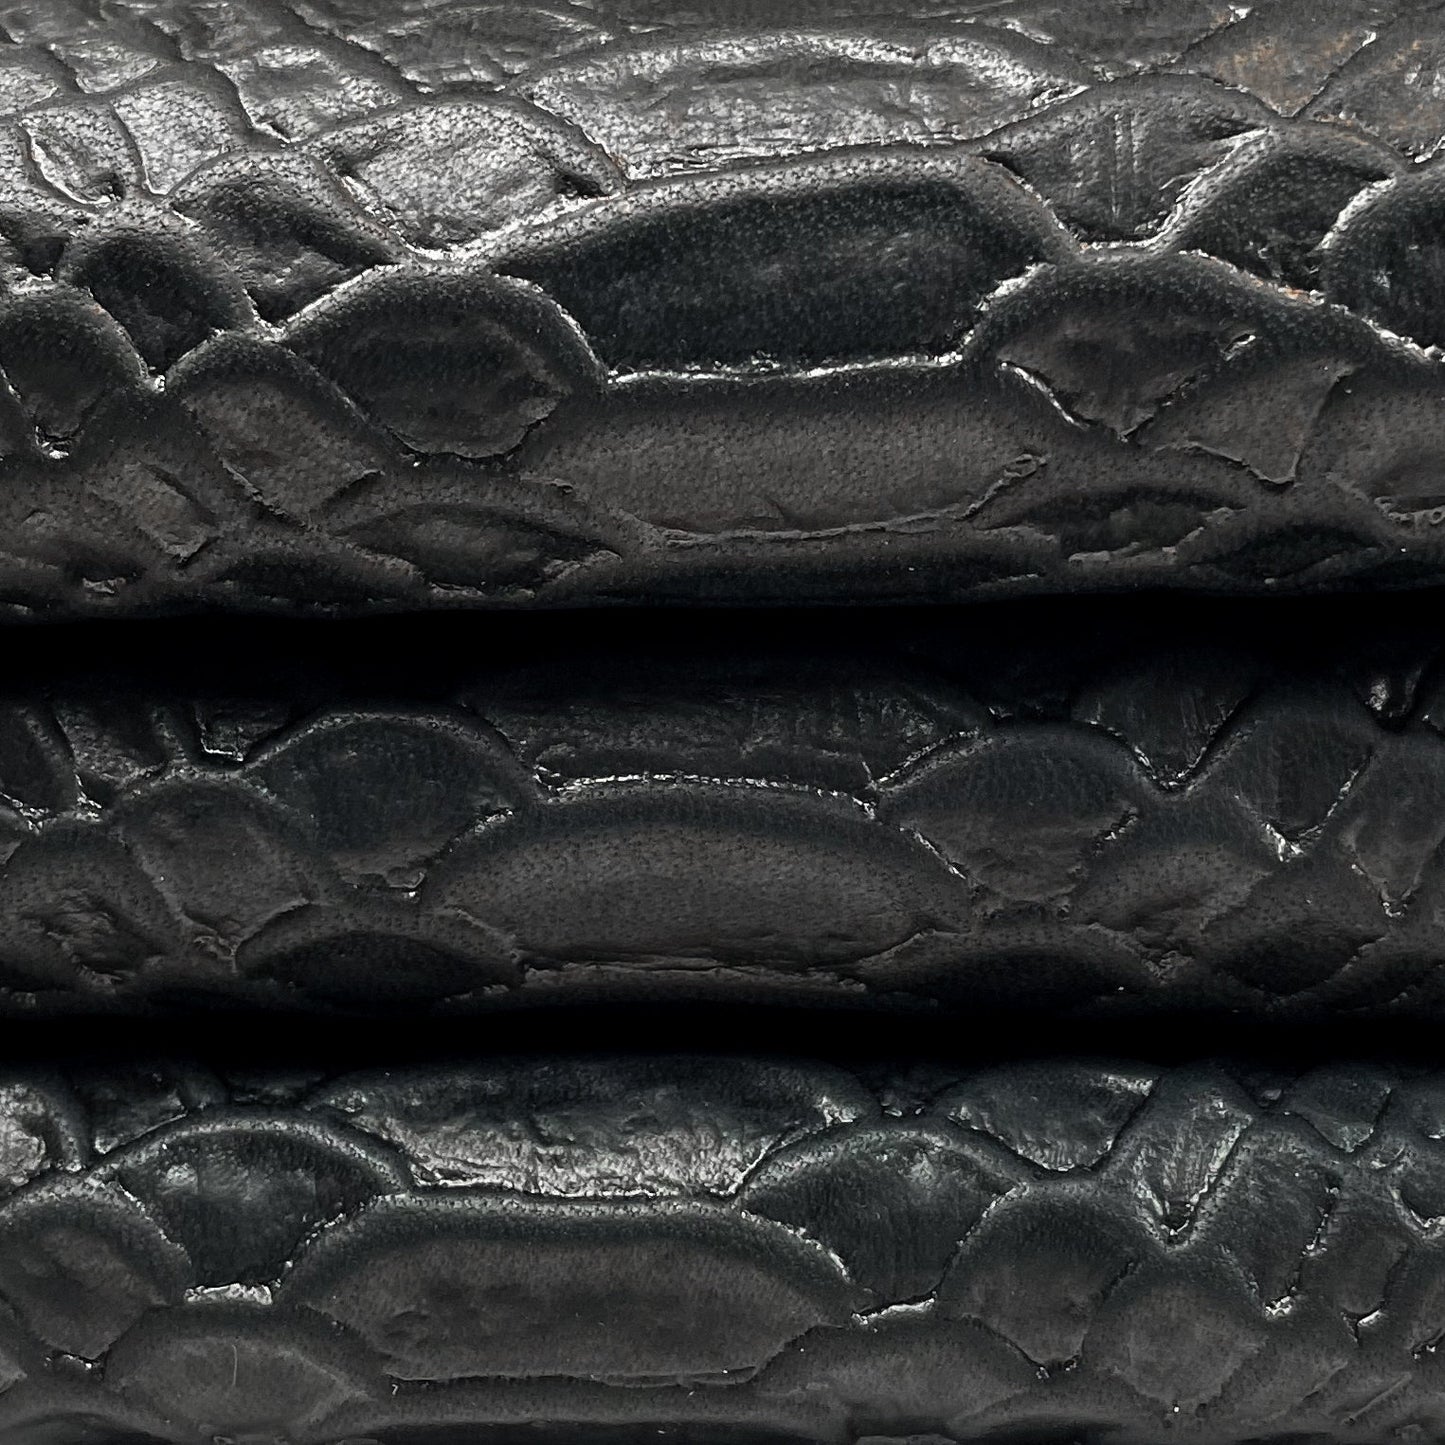 Black Snakeskin Lambskin Leather 0.8mm/2oz / BLACK SNAKE 598